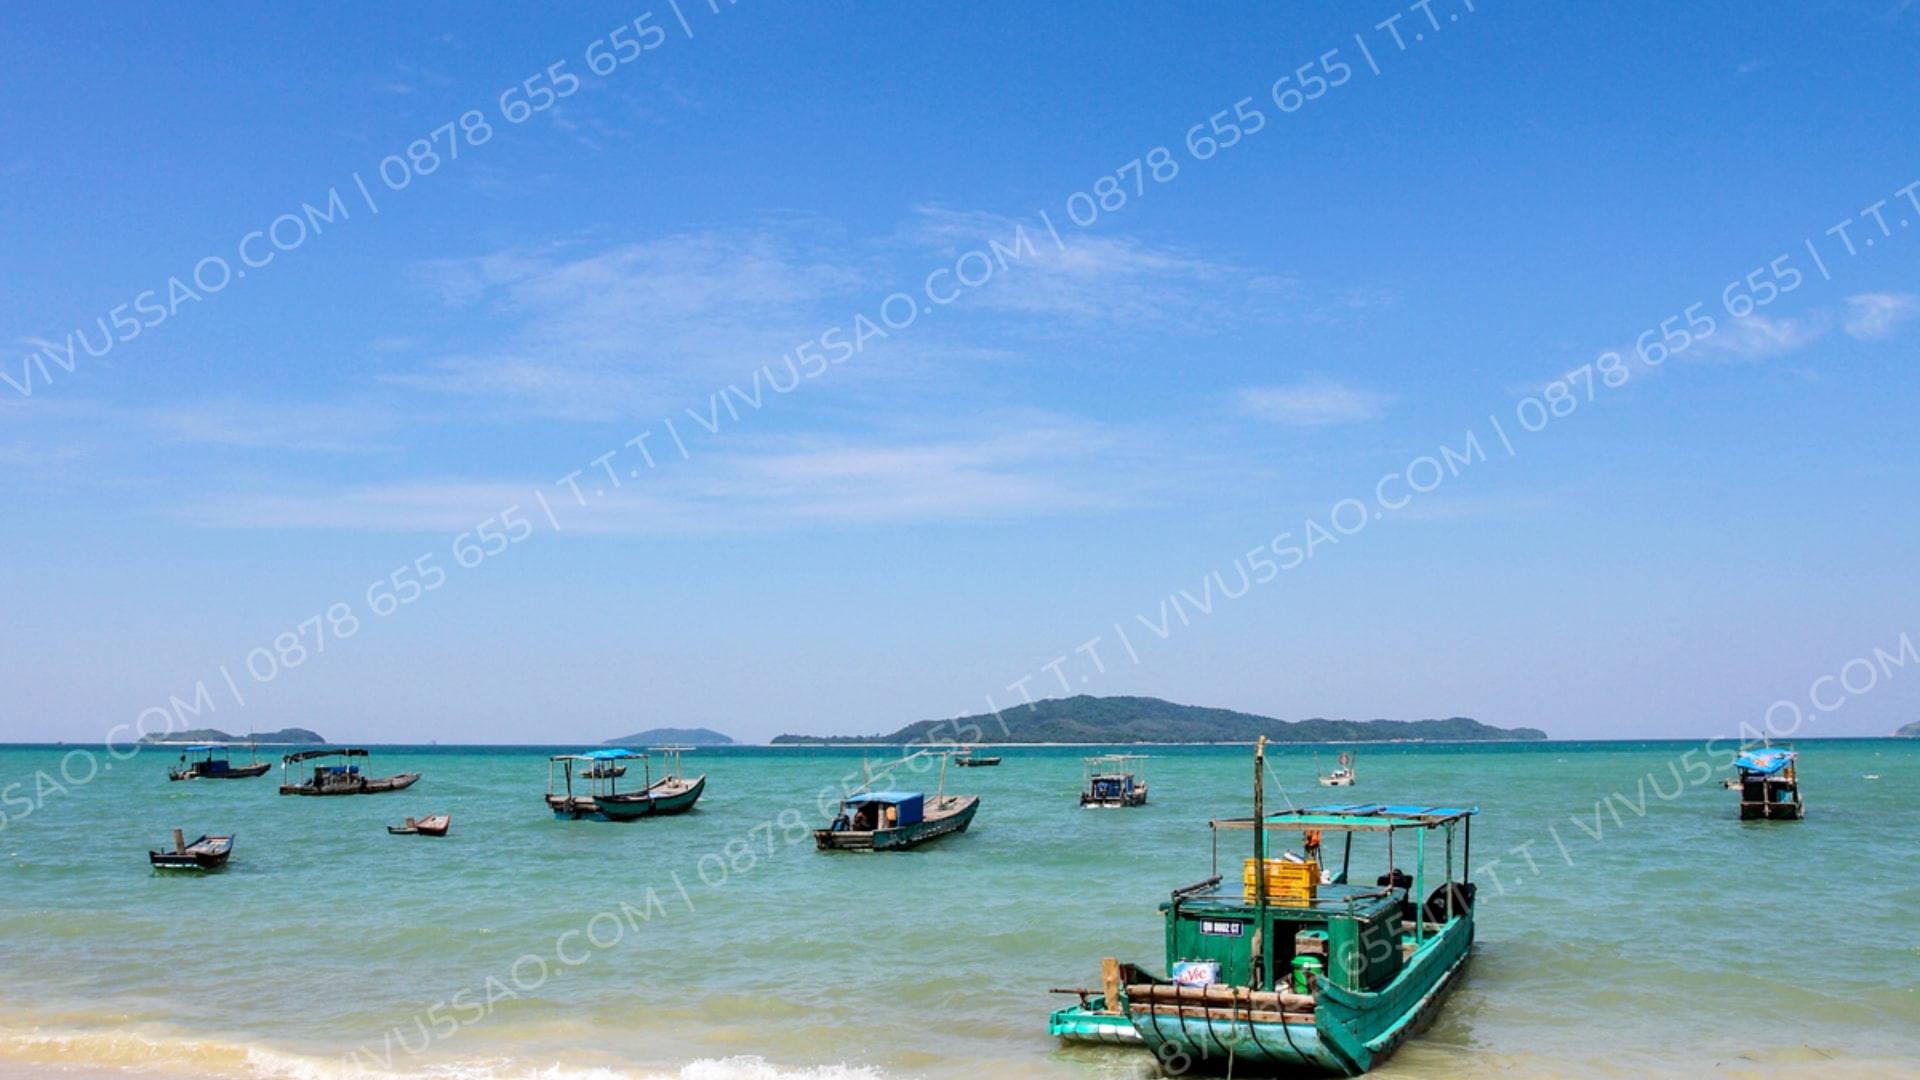 Du lịch đảo Cô Tô - Quảng Ninh mùa hè 2023